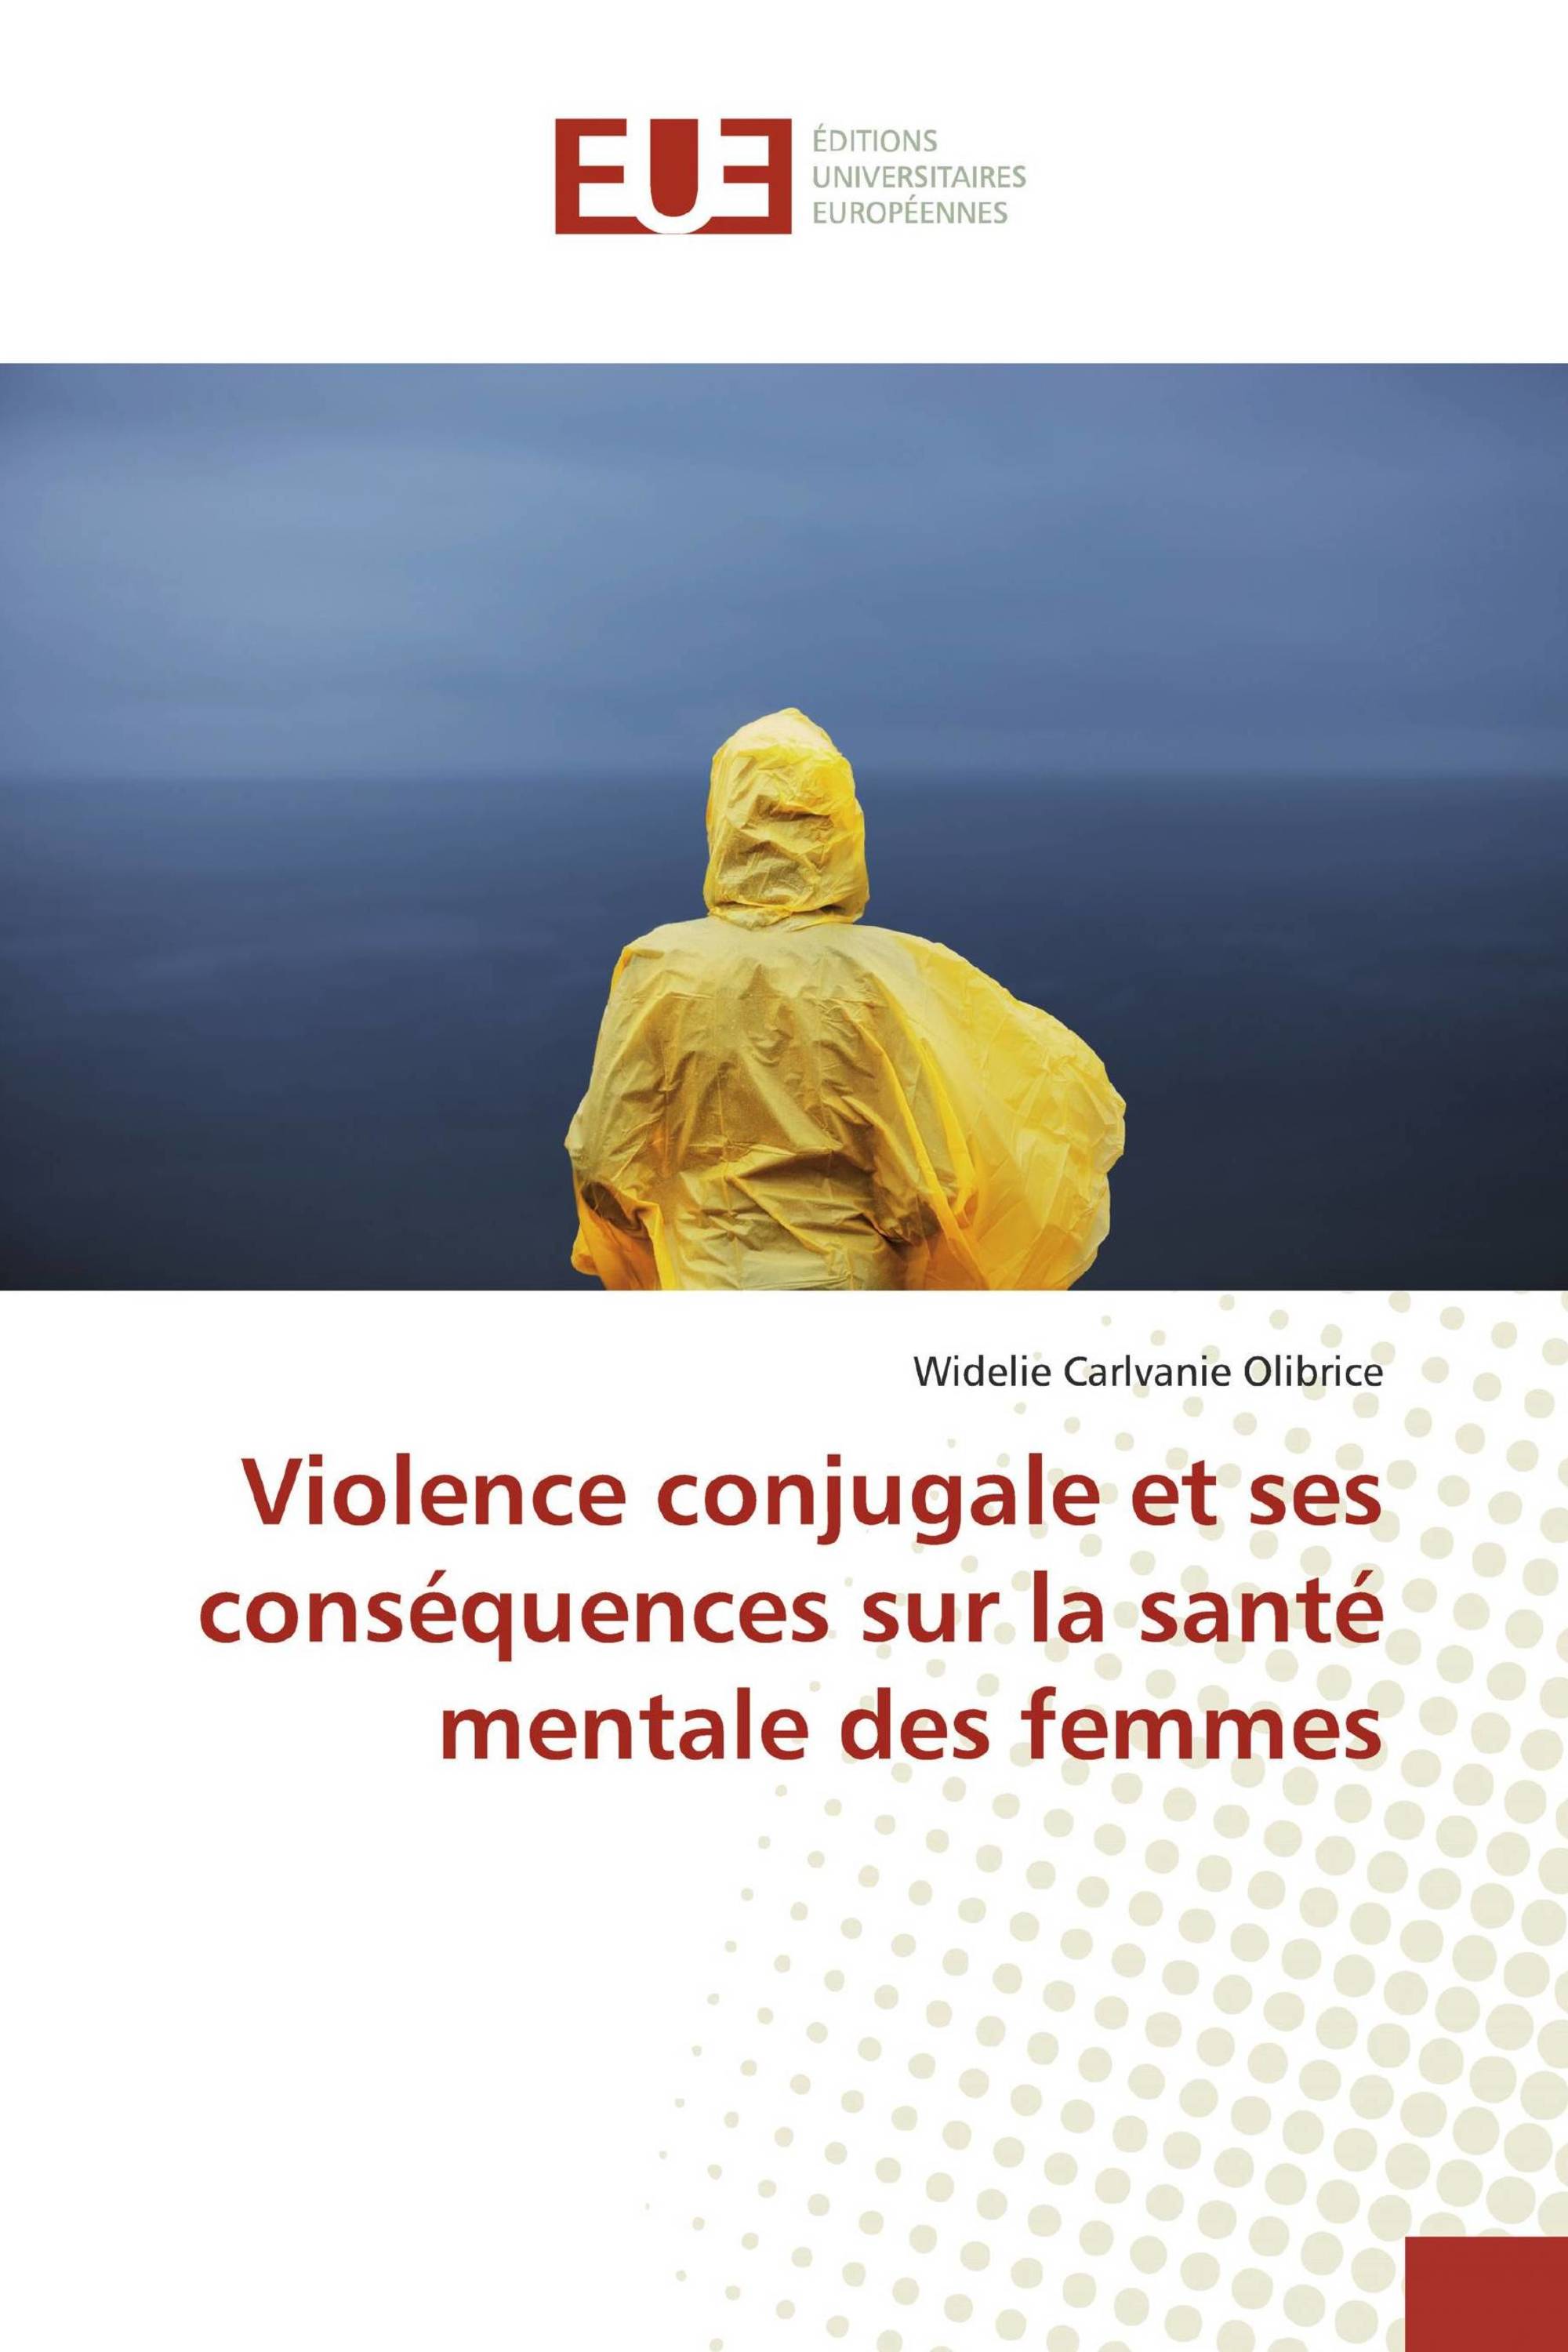 Violence conjugale et ses conséquences sur la santé mentale des femmes